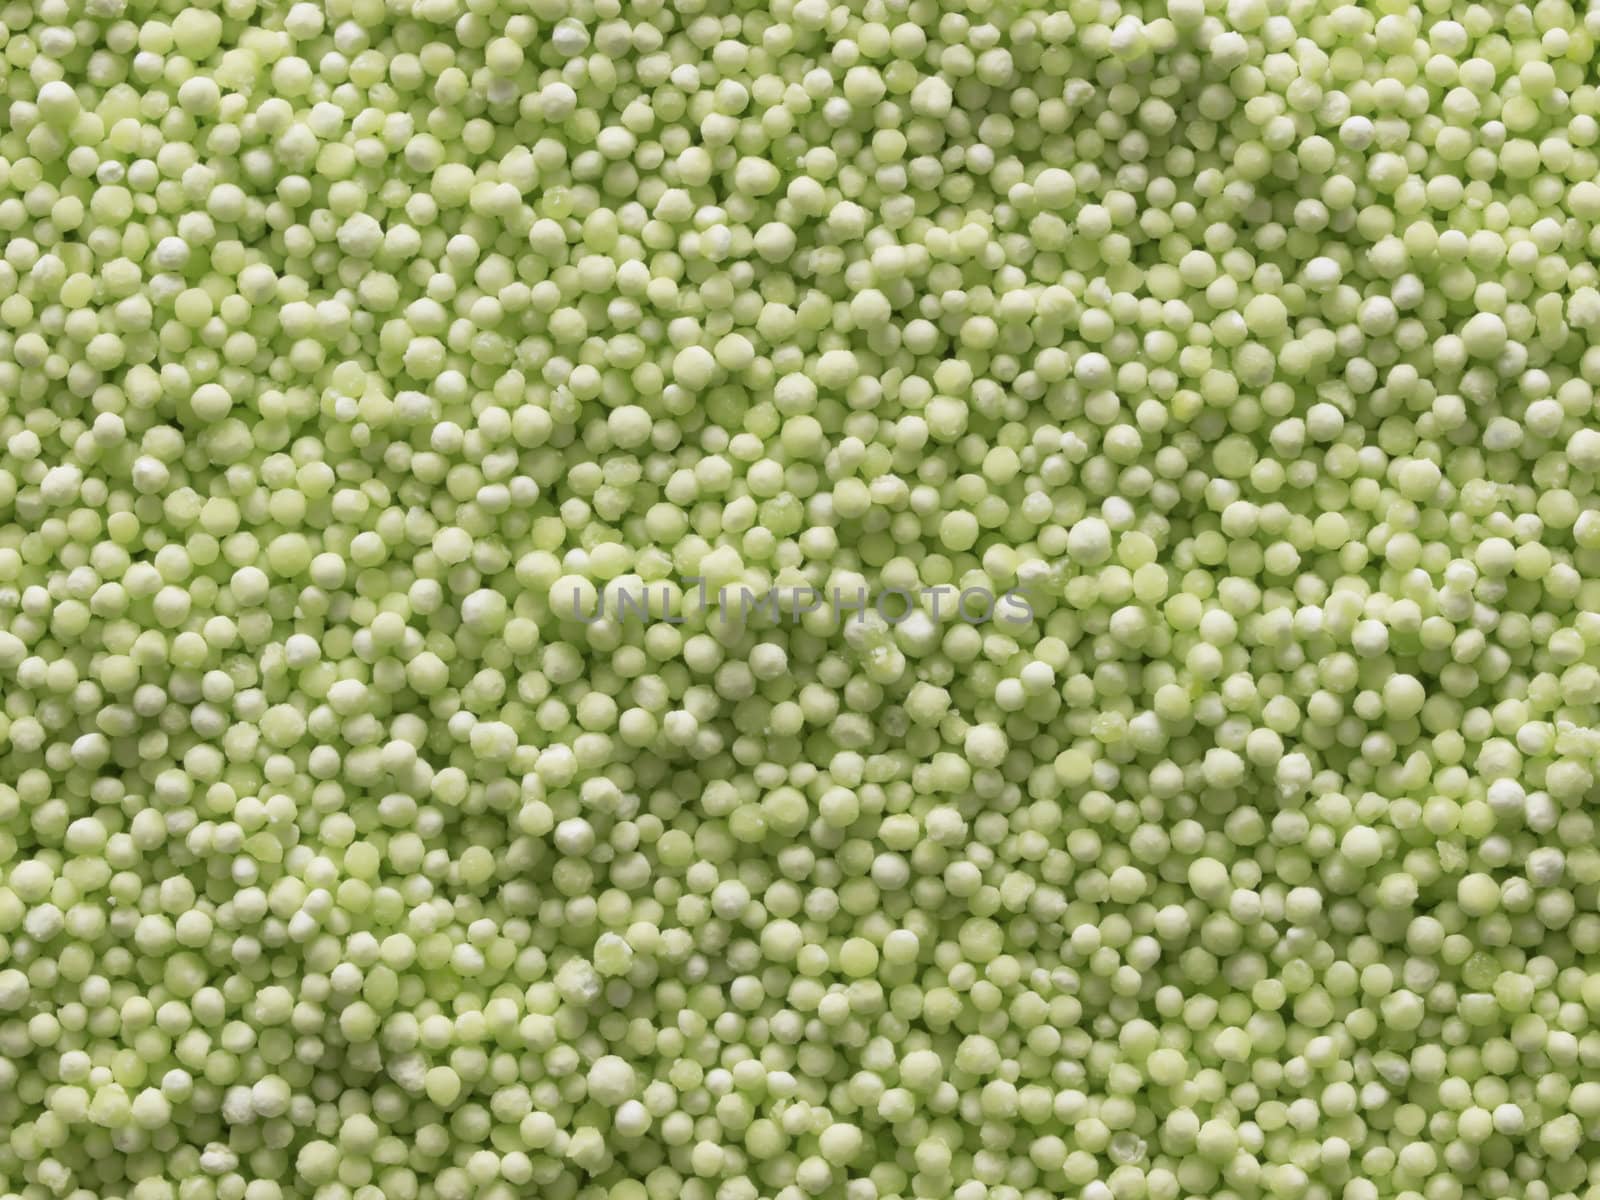 green sago pearls by zkruger